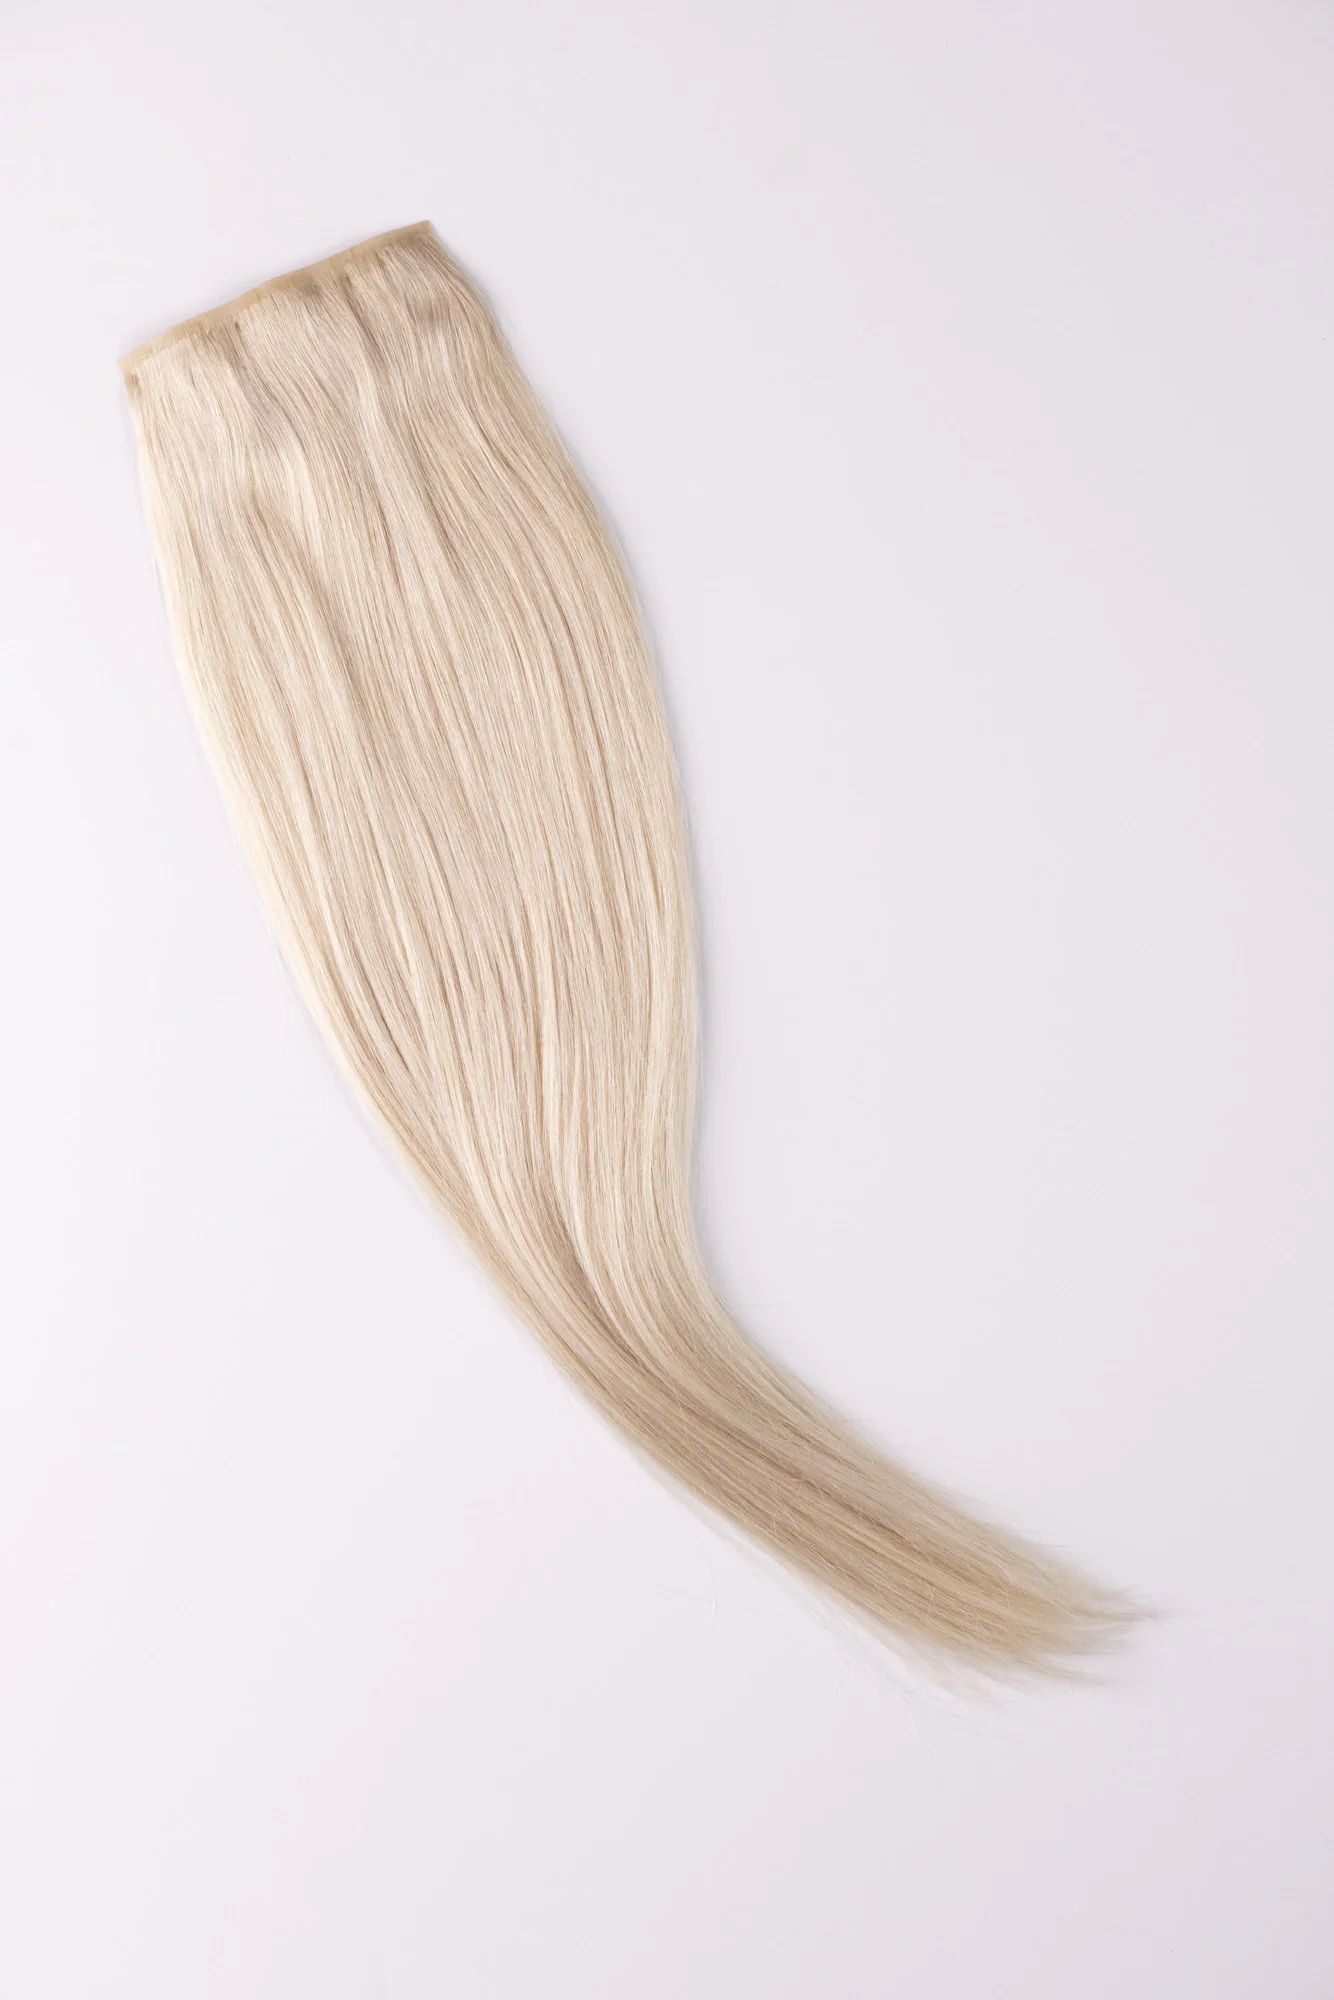 Ice Breaker | Up | Barefoot Blonde Hair